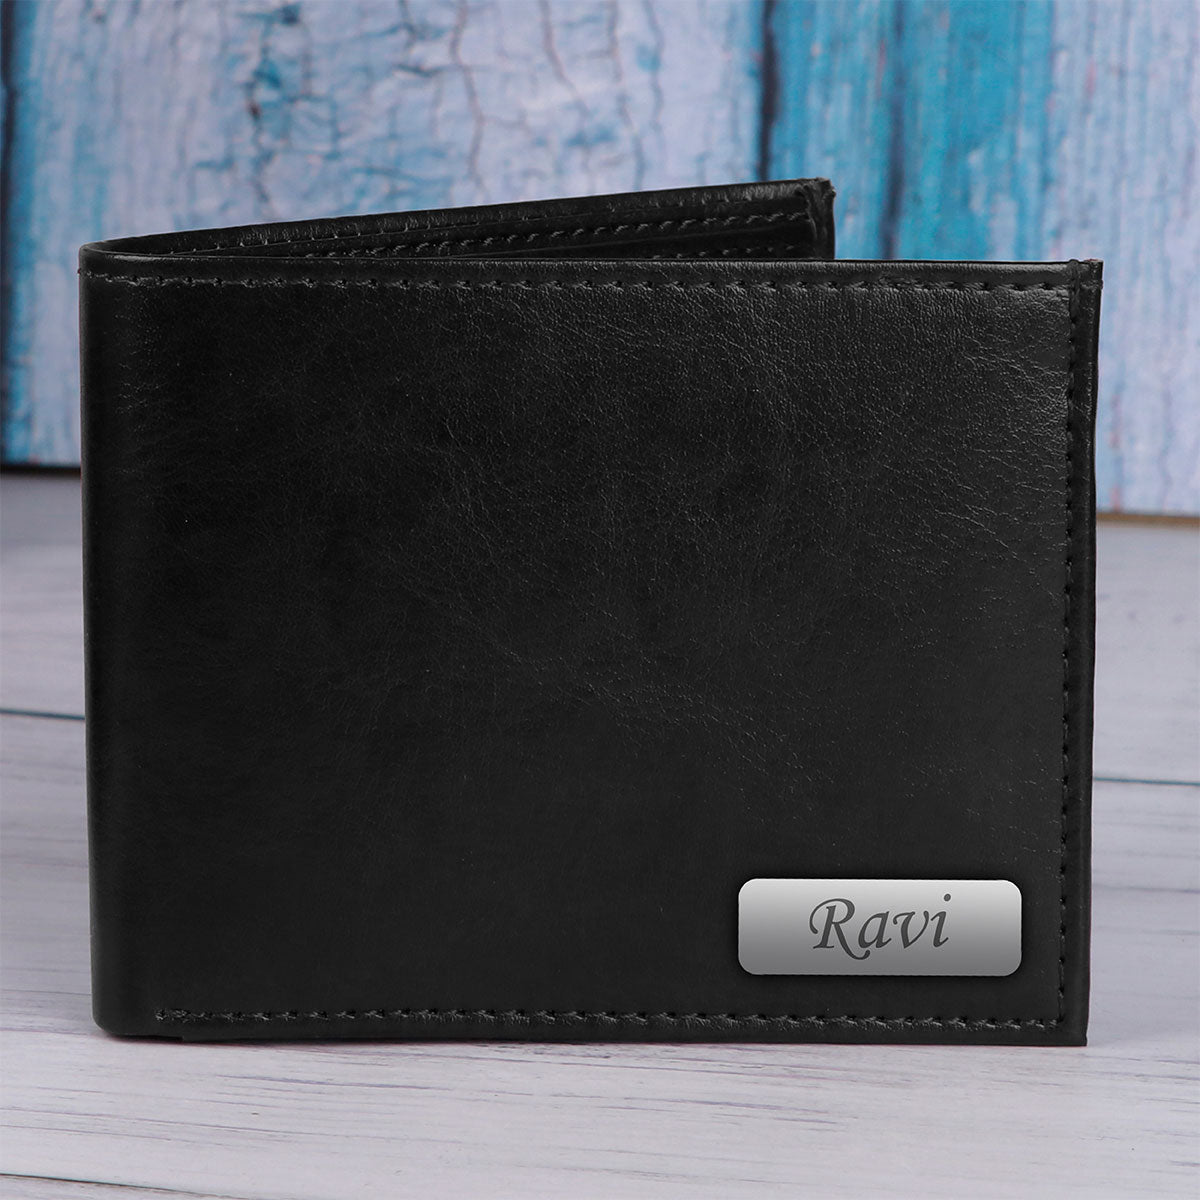 Personalized Belt & Wallet Gift Set - Black